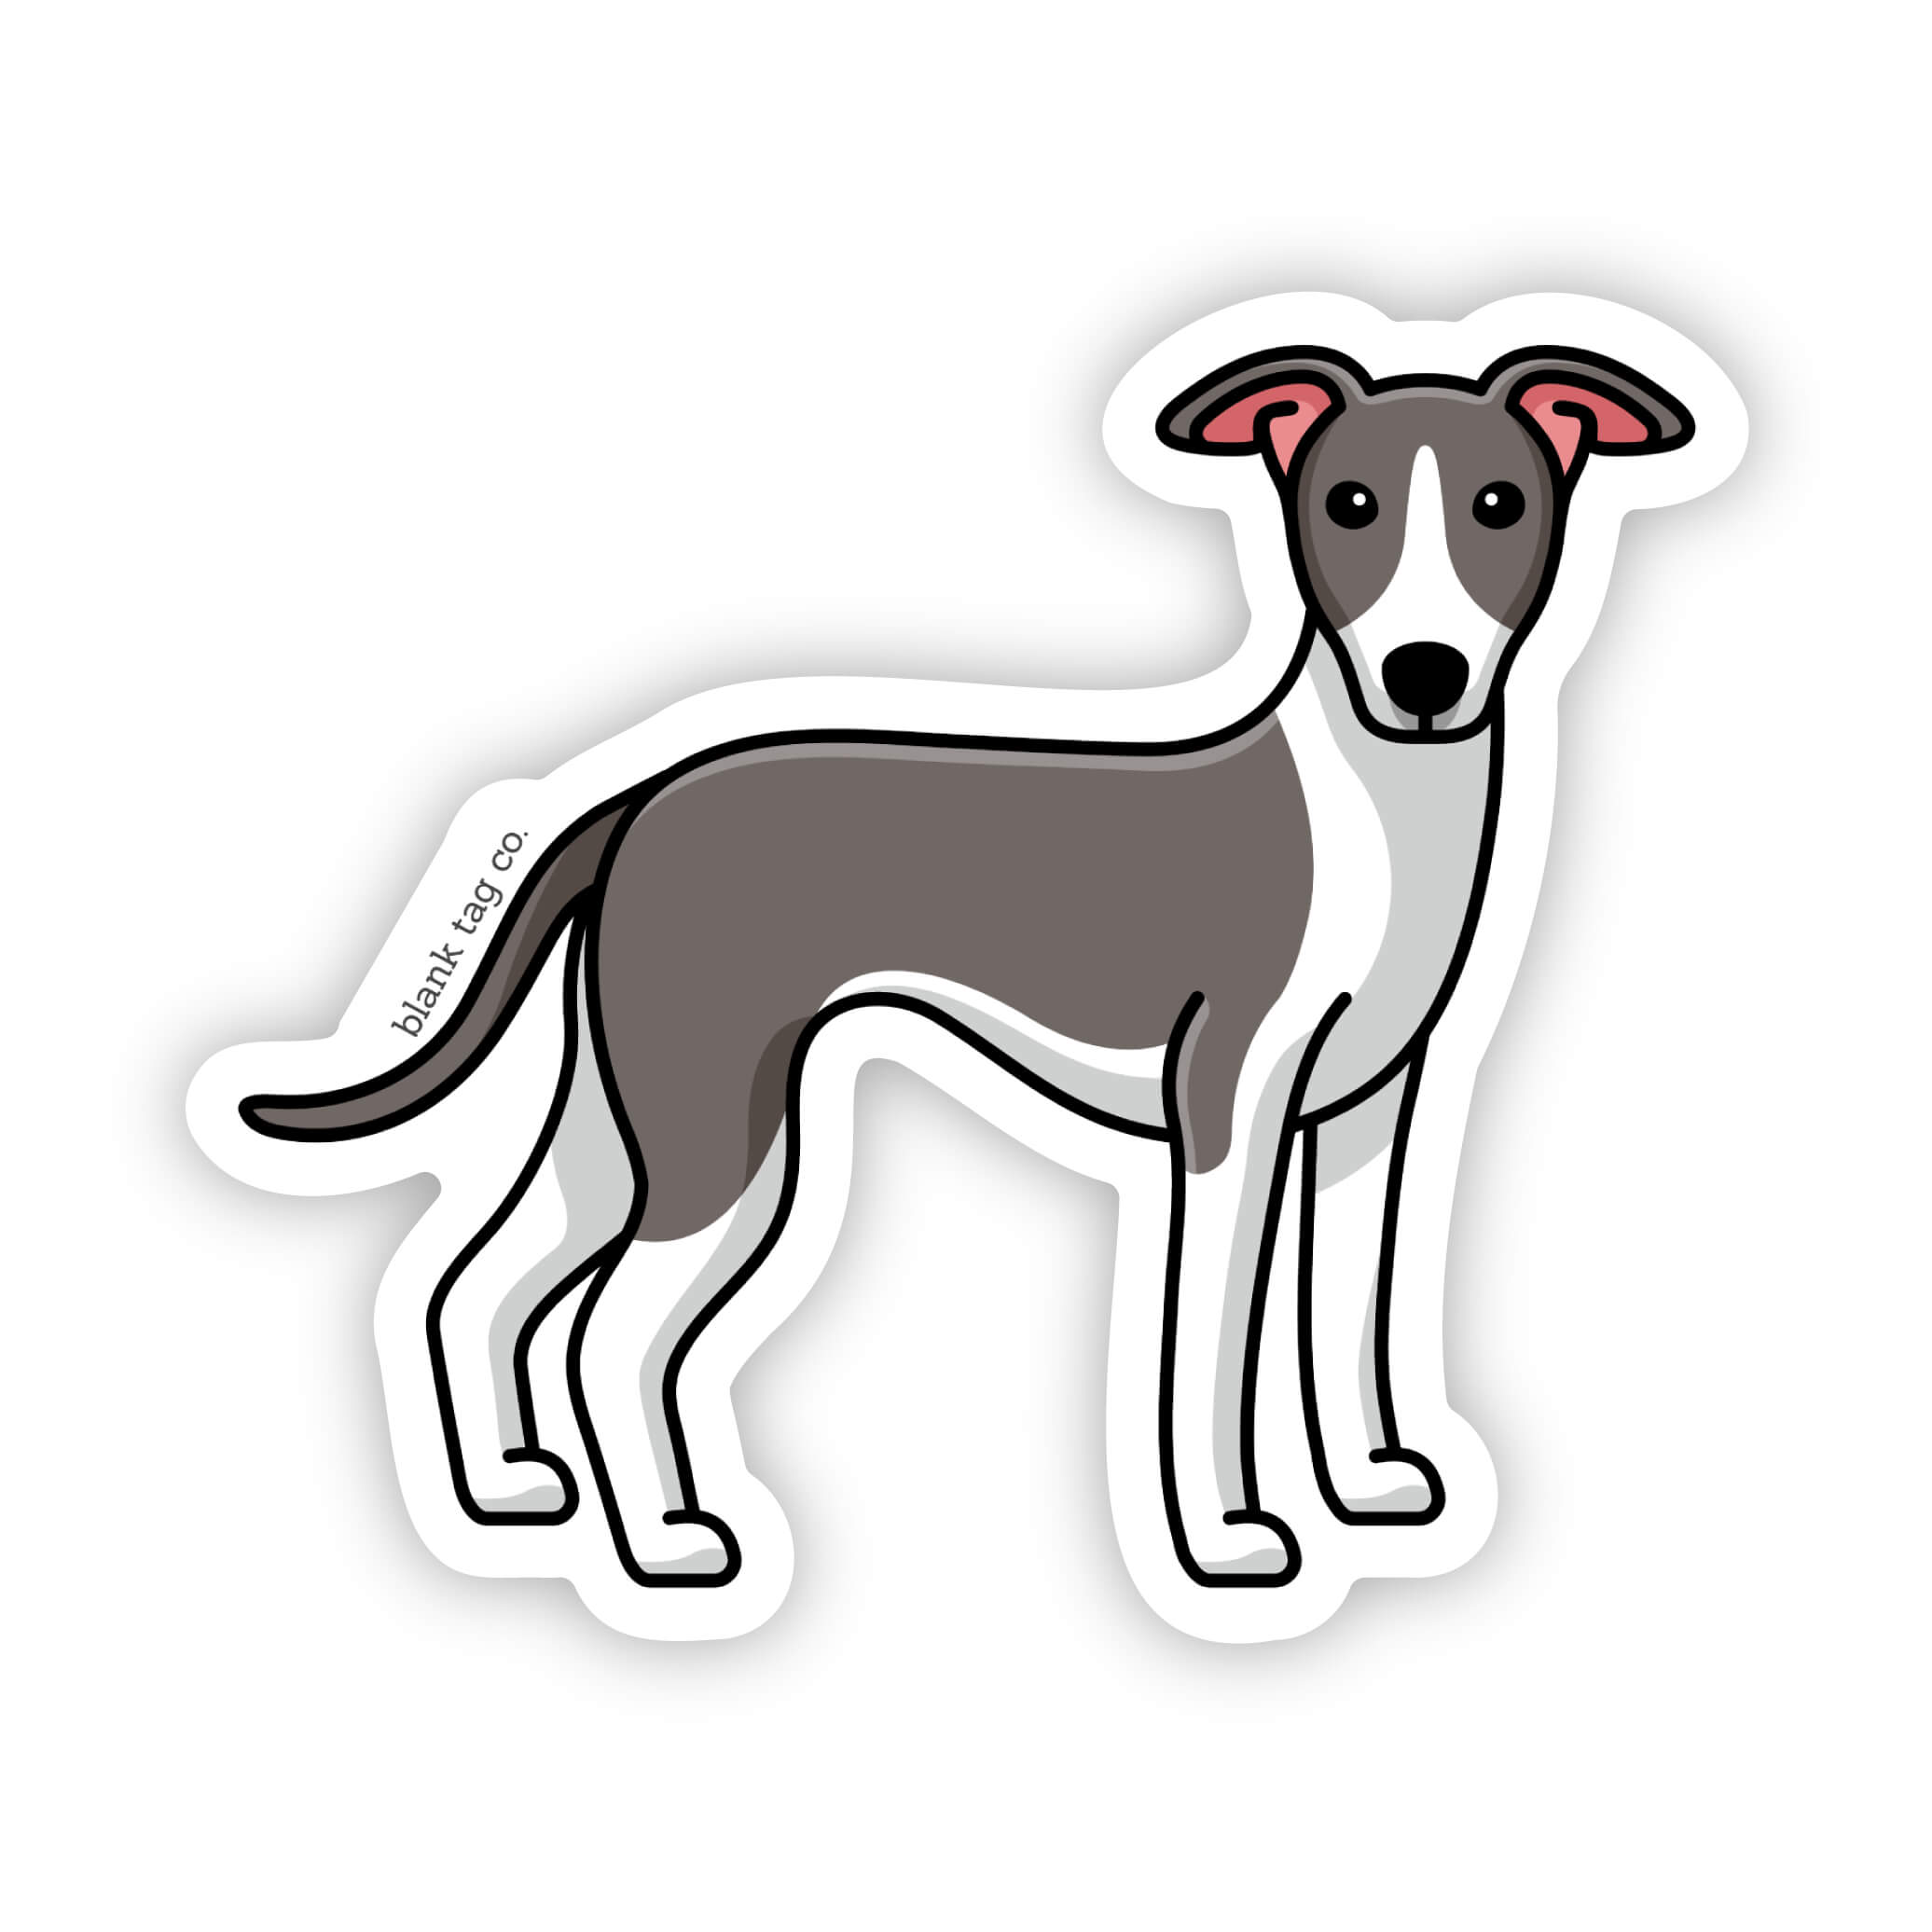 The Greyhound Sticker